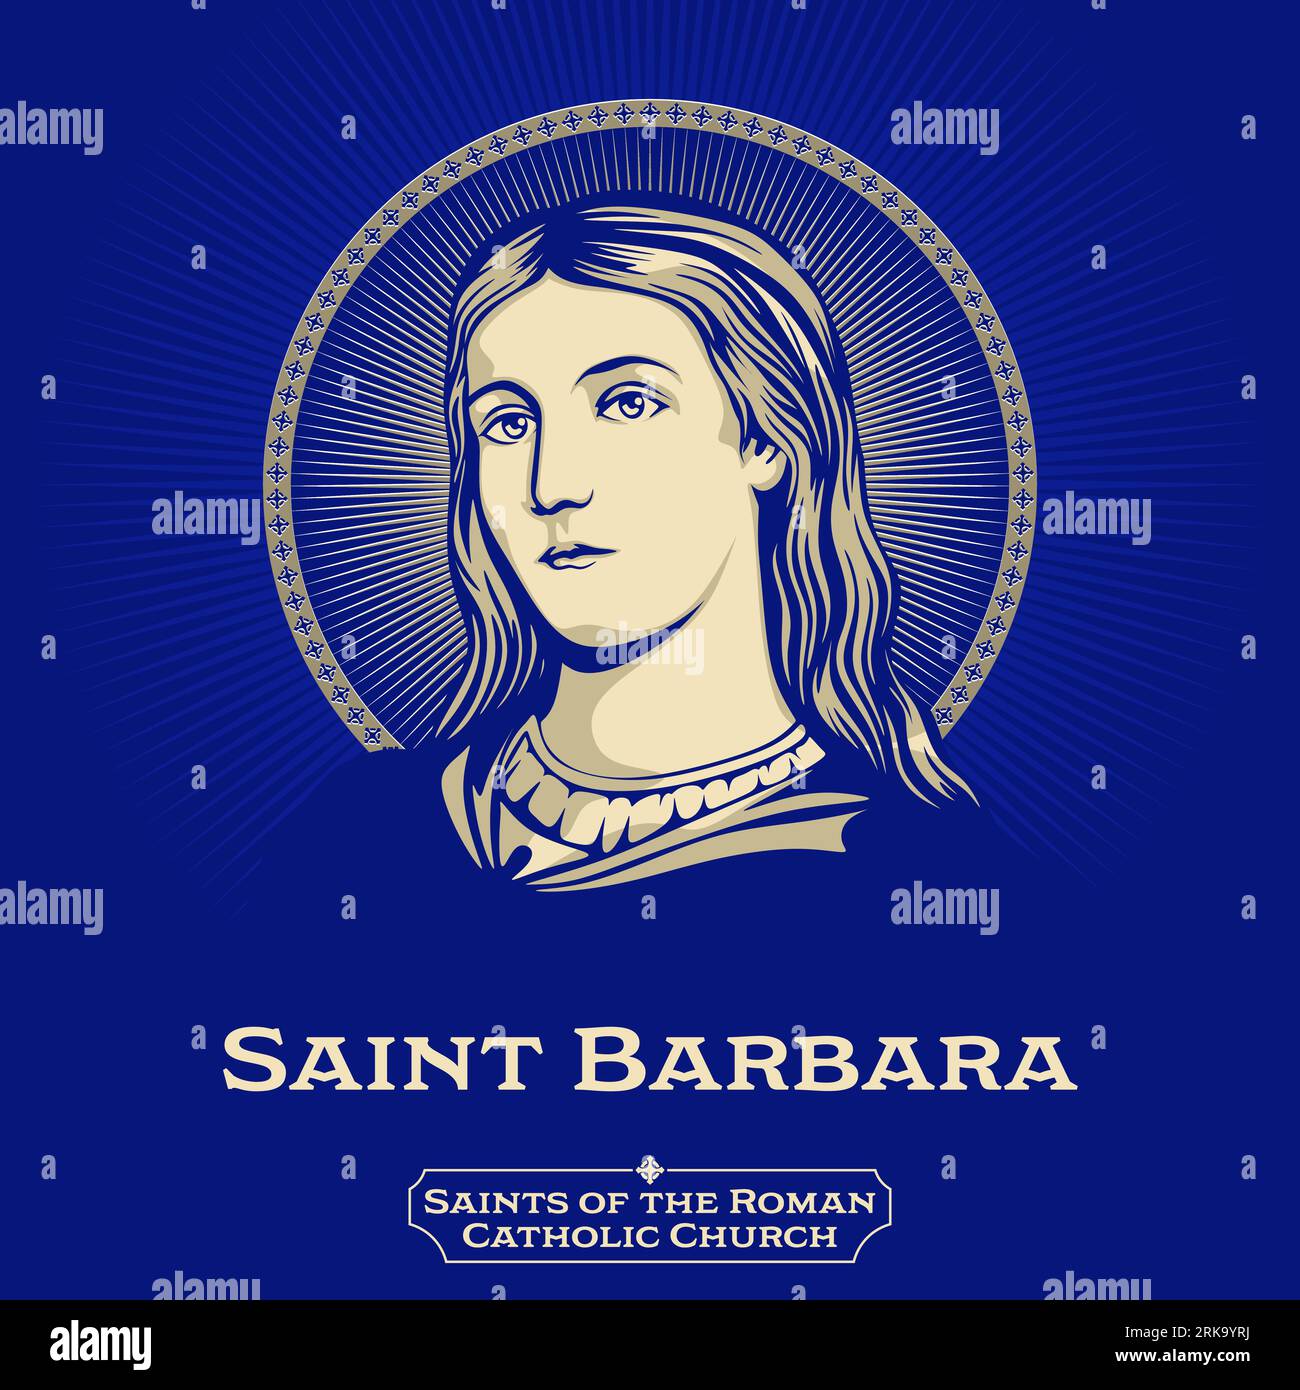 Saints catholiques. Sainte Barbara, connue dans l'Église orthodoxe orientale sous le nom de Grande Martyr Barbara, était une sainte et martyre grecque des premiers chrétiens. Illustration de Vecteur